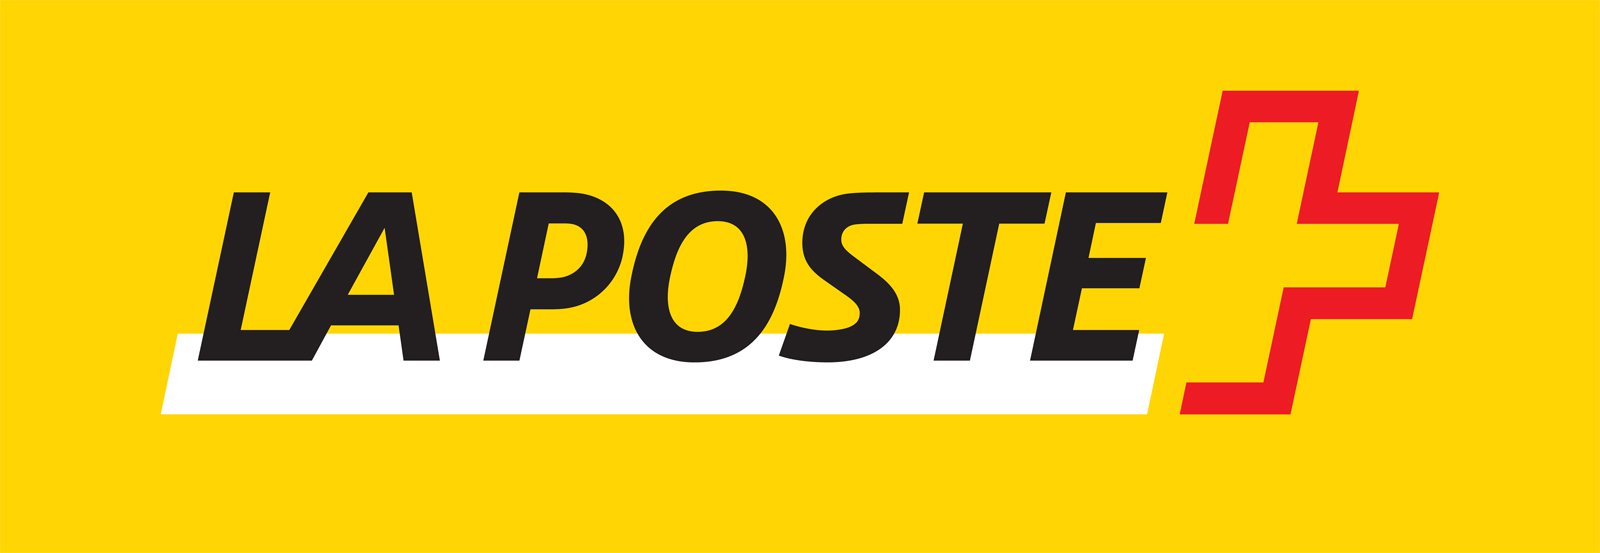 La Poste logo.jpg